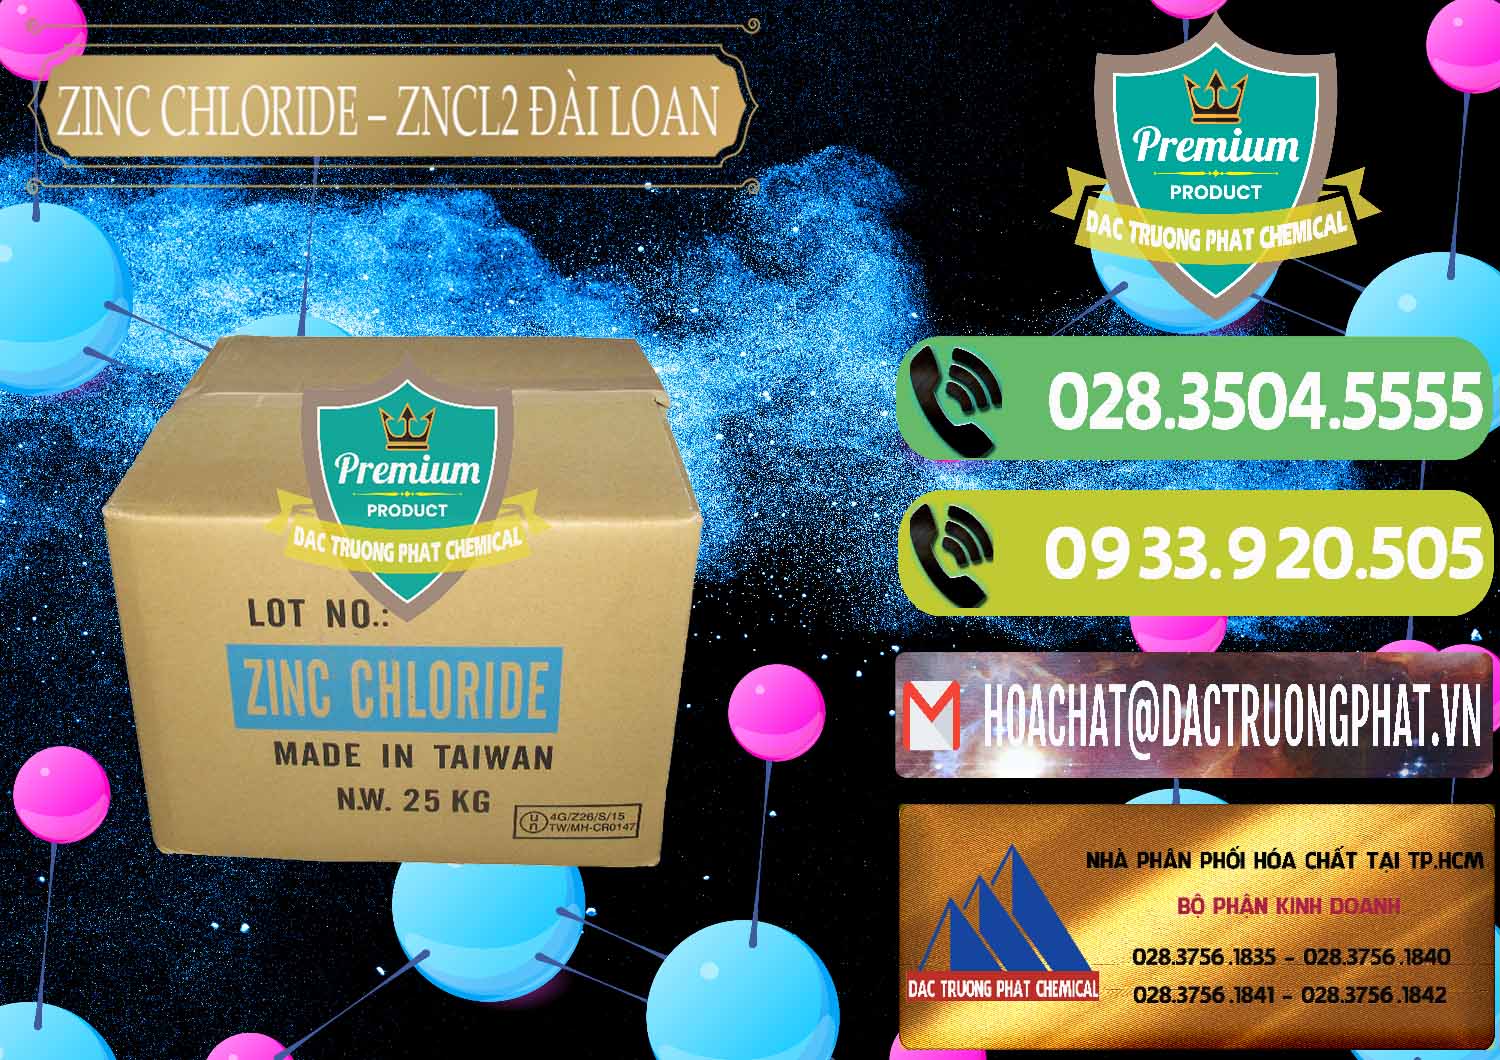 Đơn vị bán & phân phối Zinc Chloride - ZNCL2 96% Đài Loan Taiwan - 0178 - Nơi chuyên nhập khẩu và cung cấp hóa chất tại TP.HCM - hoachatmientay.vn